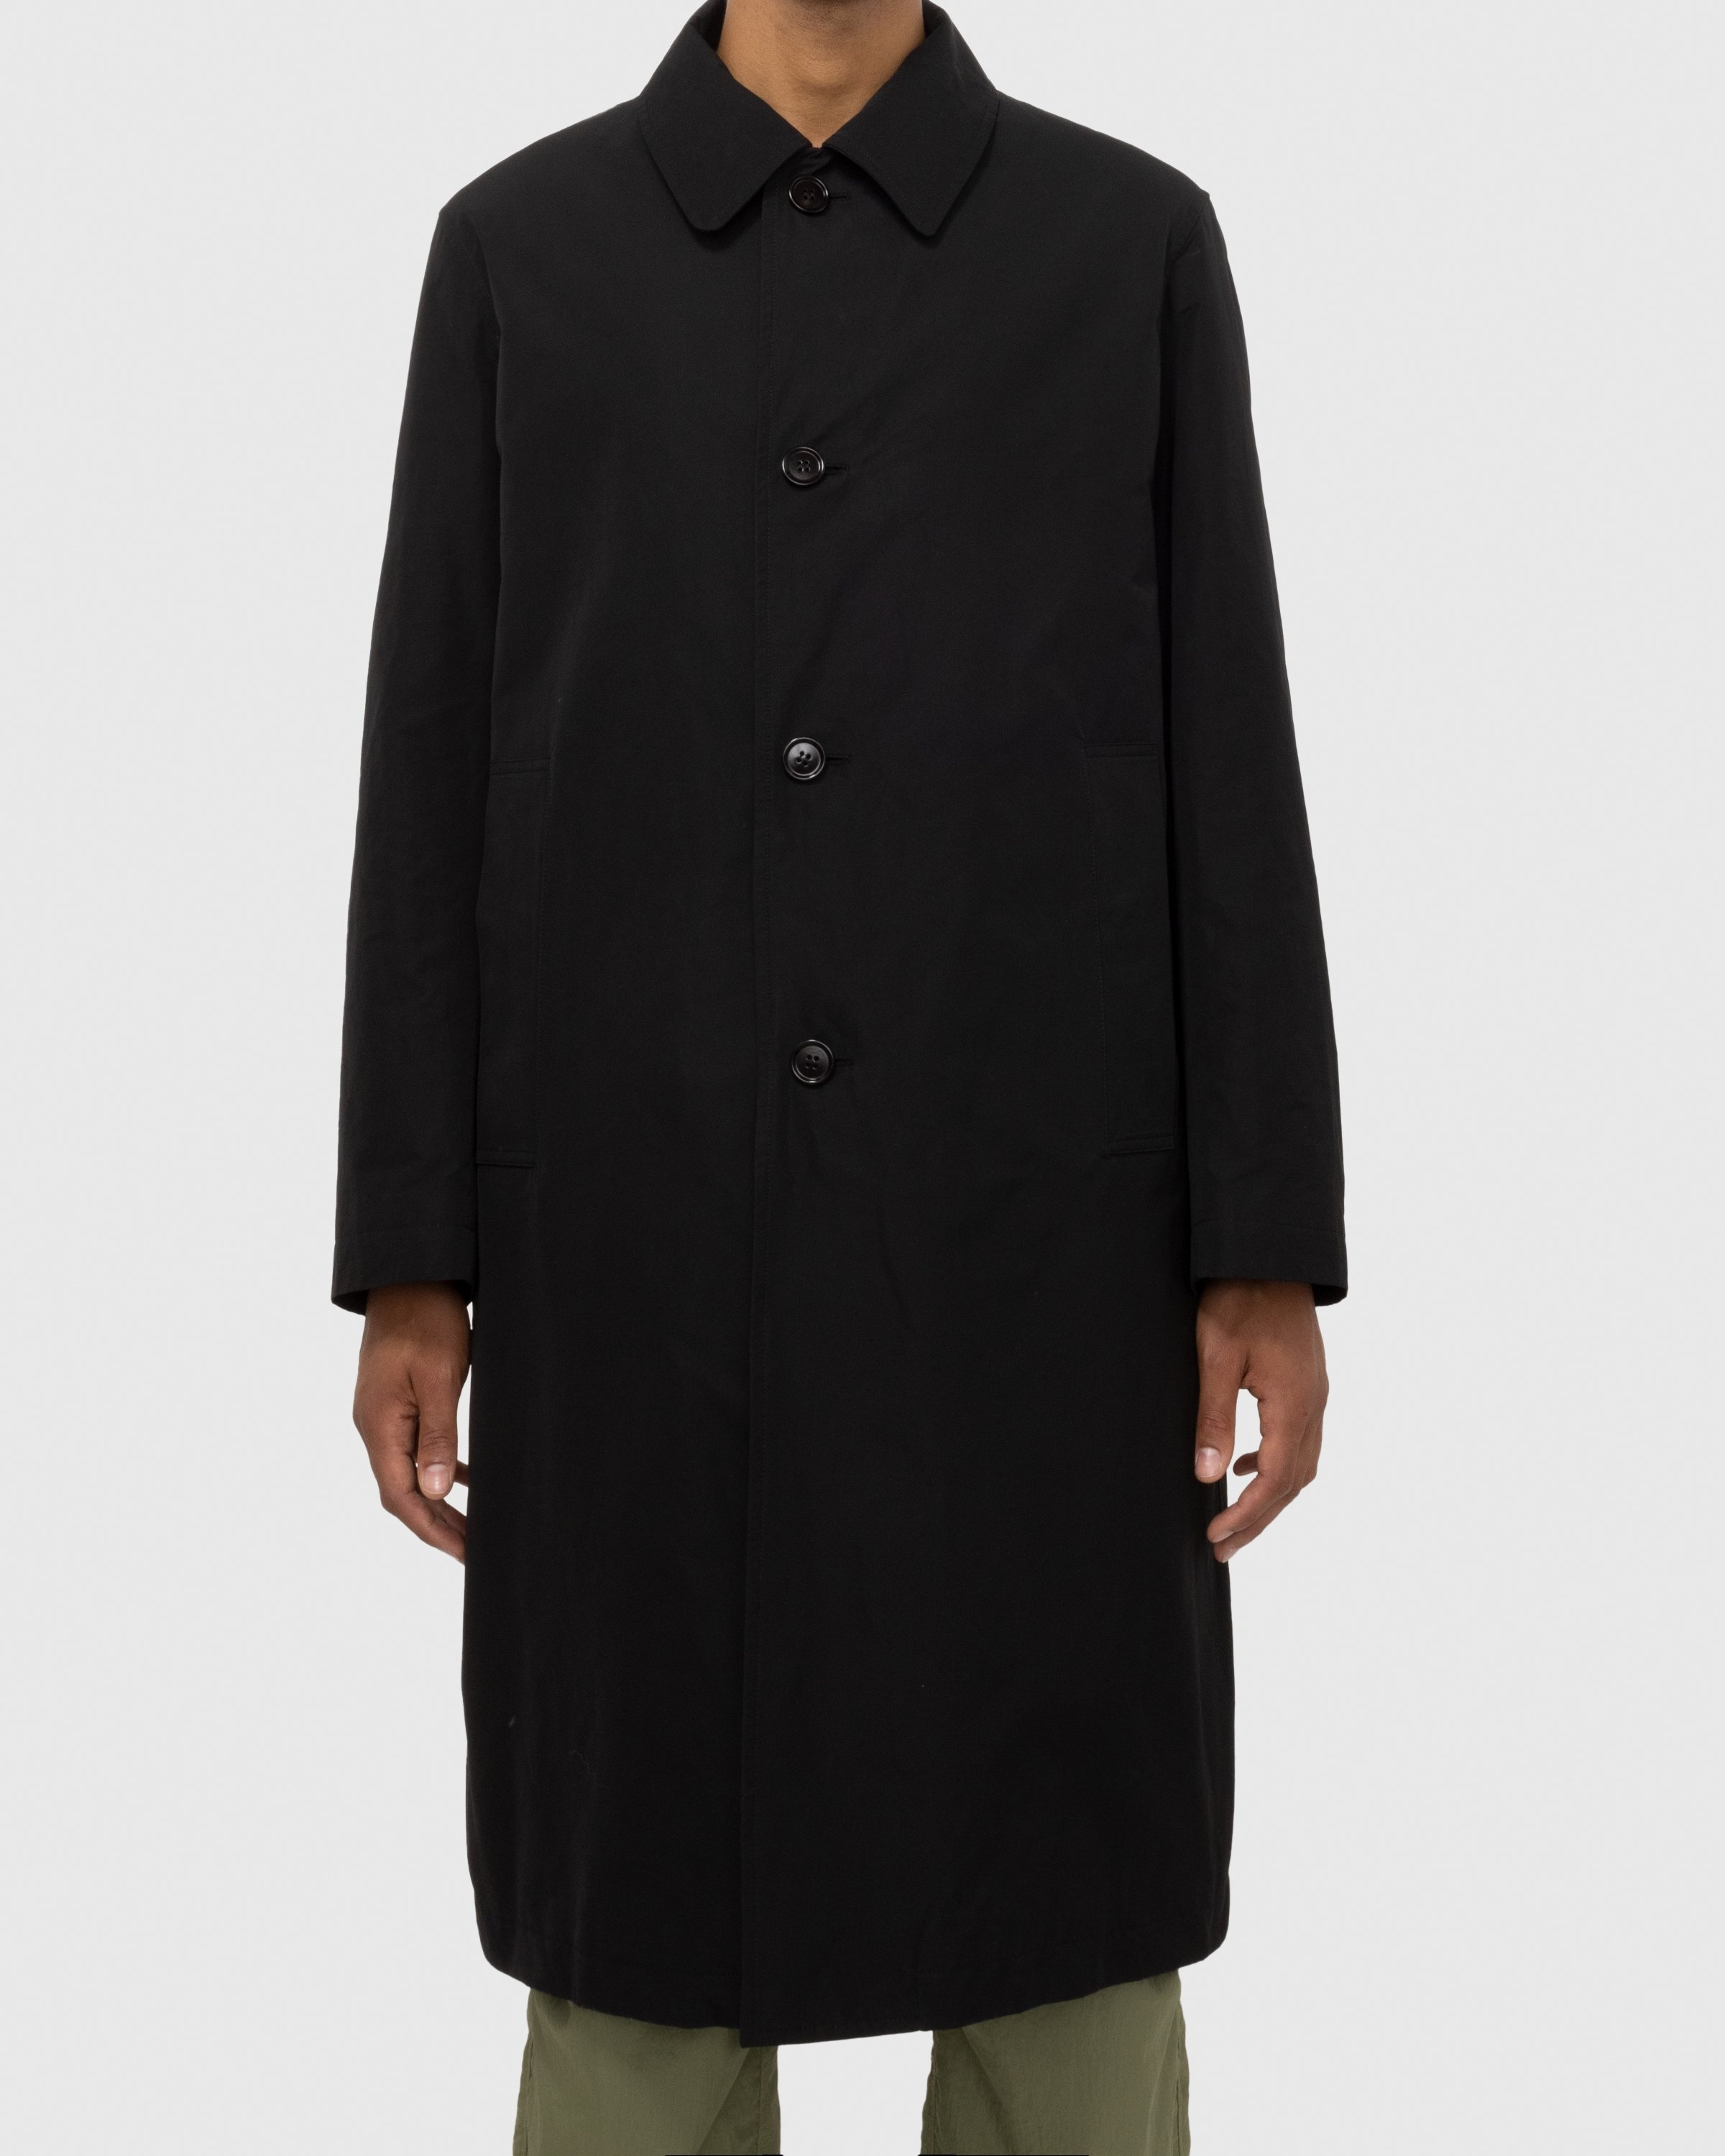 Dries van Noten – Rankle Coat Black - Trench Coats - Black - Image 4